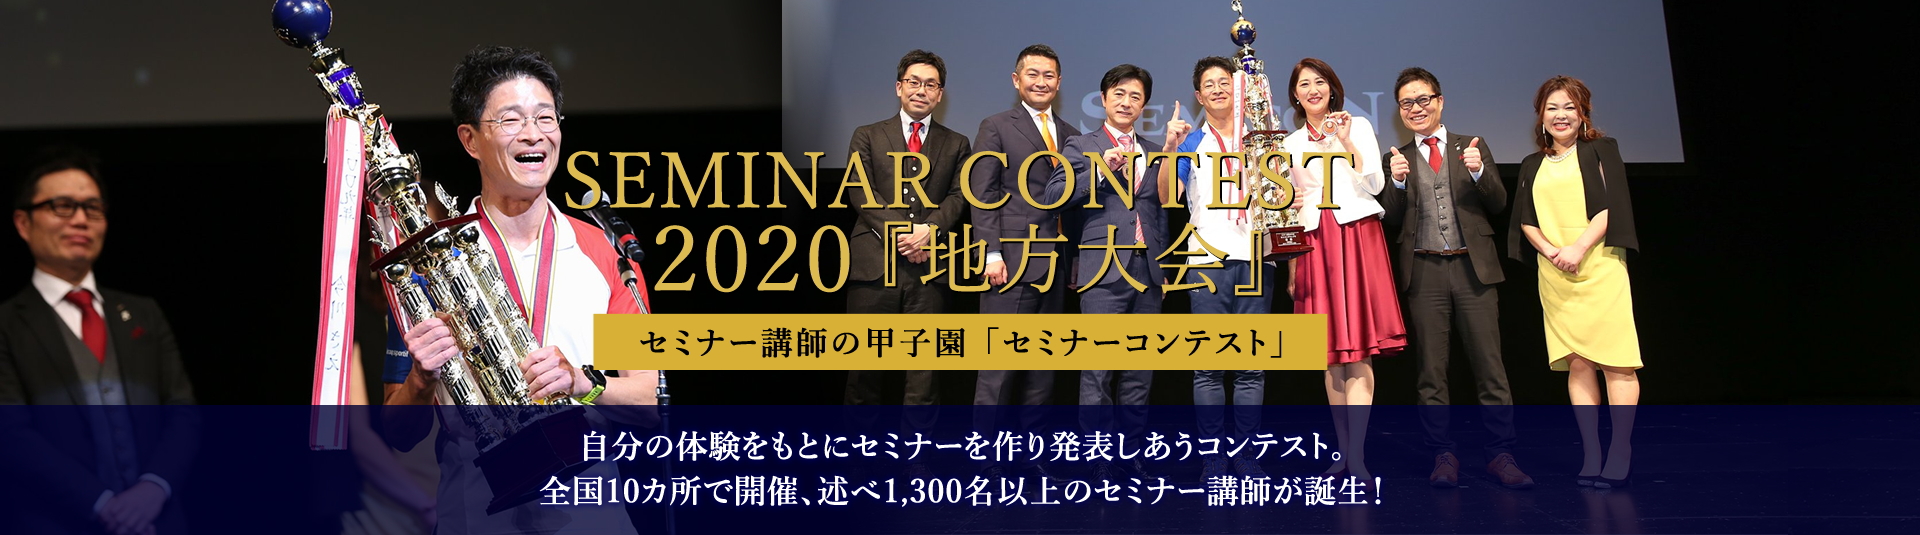 セミナーコンテスト大阪 | セミナーコンテスト | 一般社団法人日本 